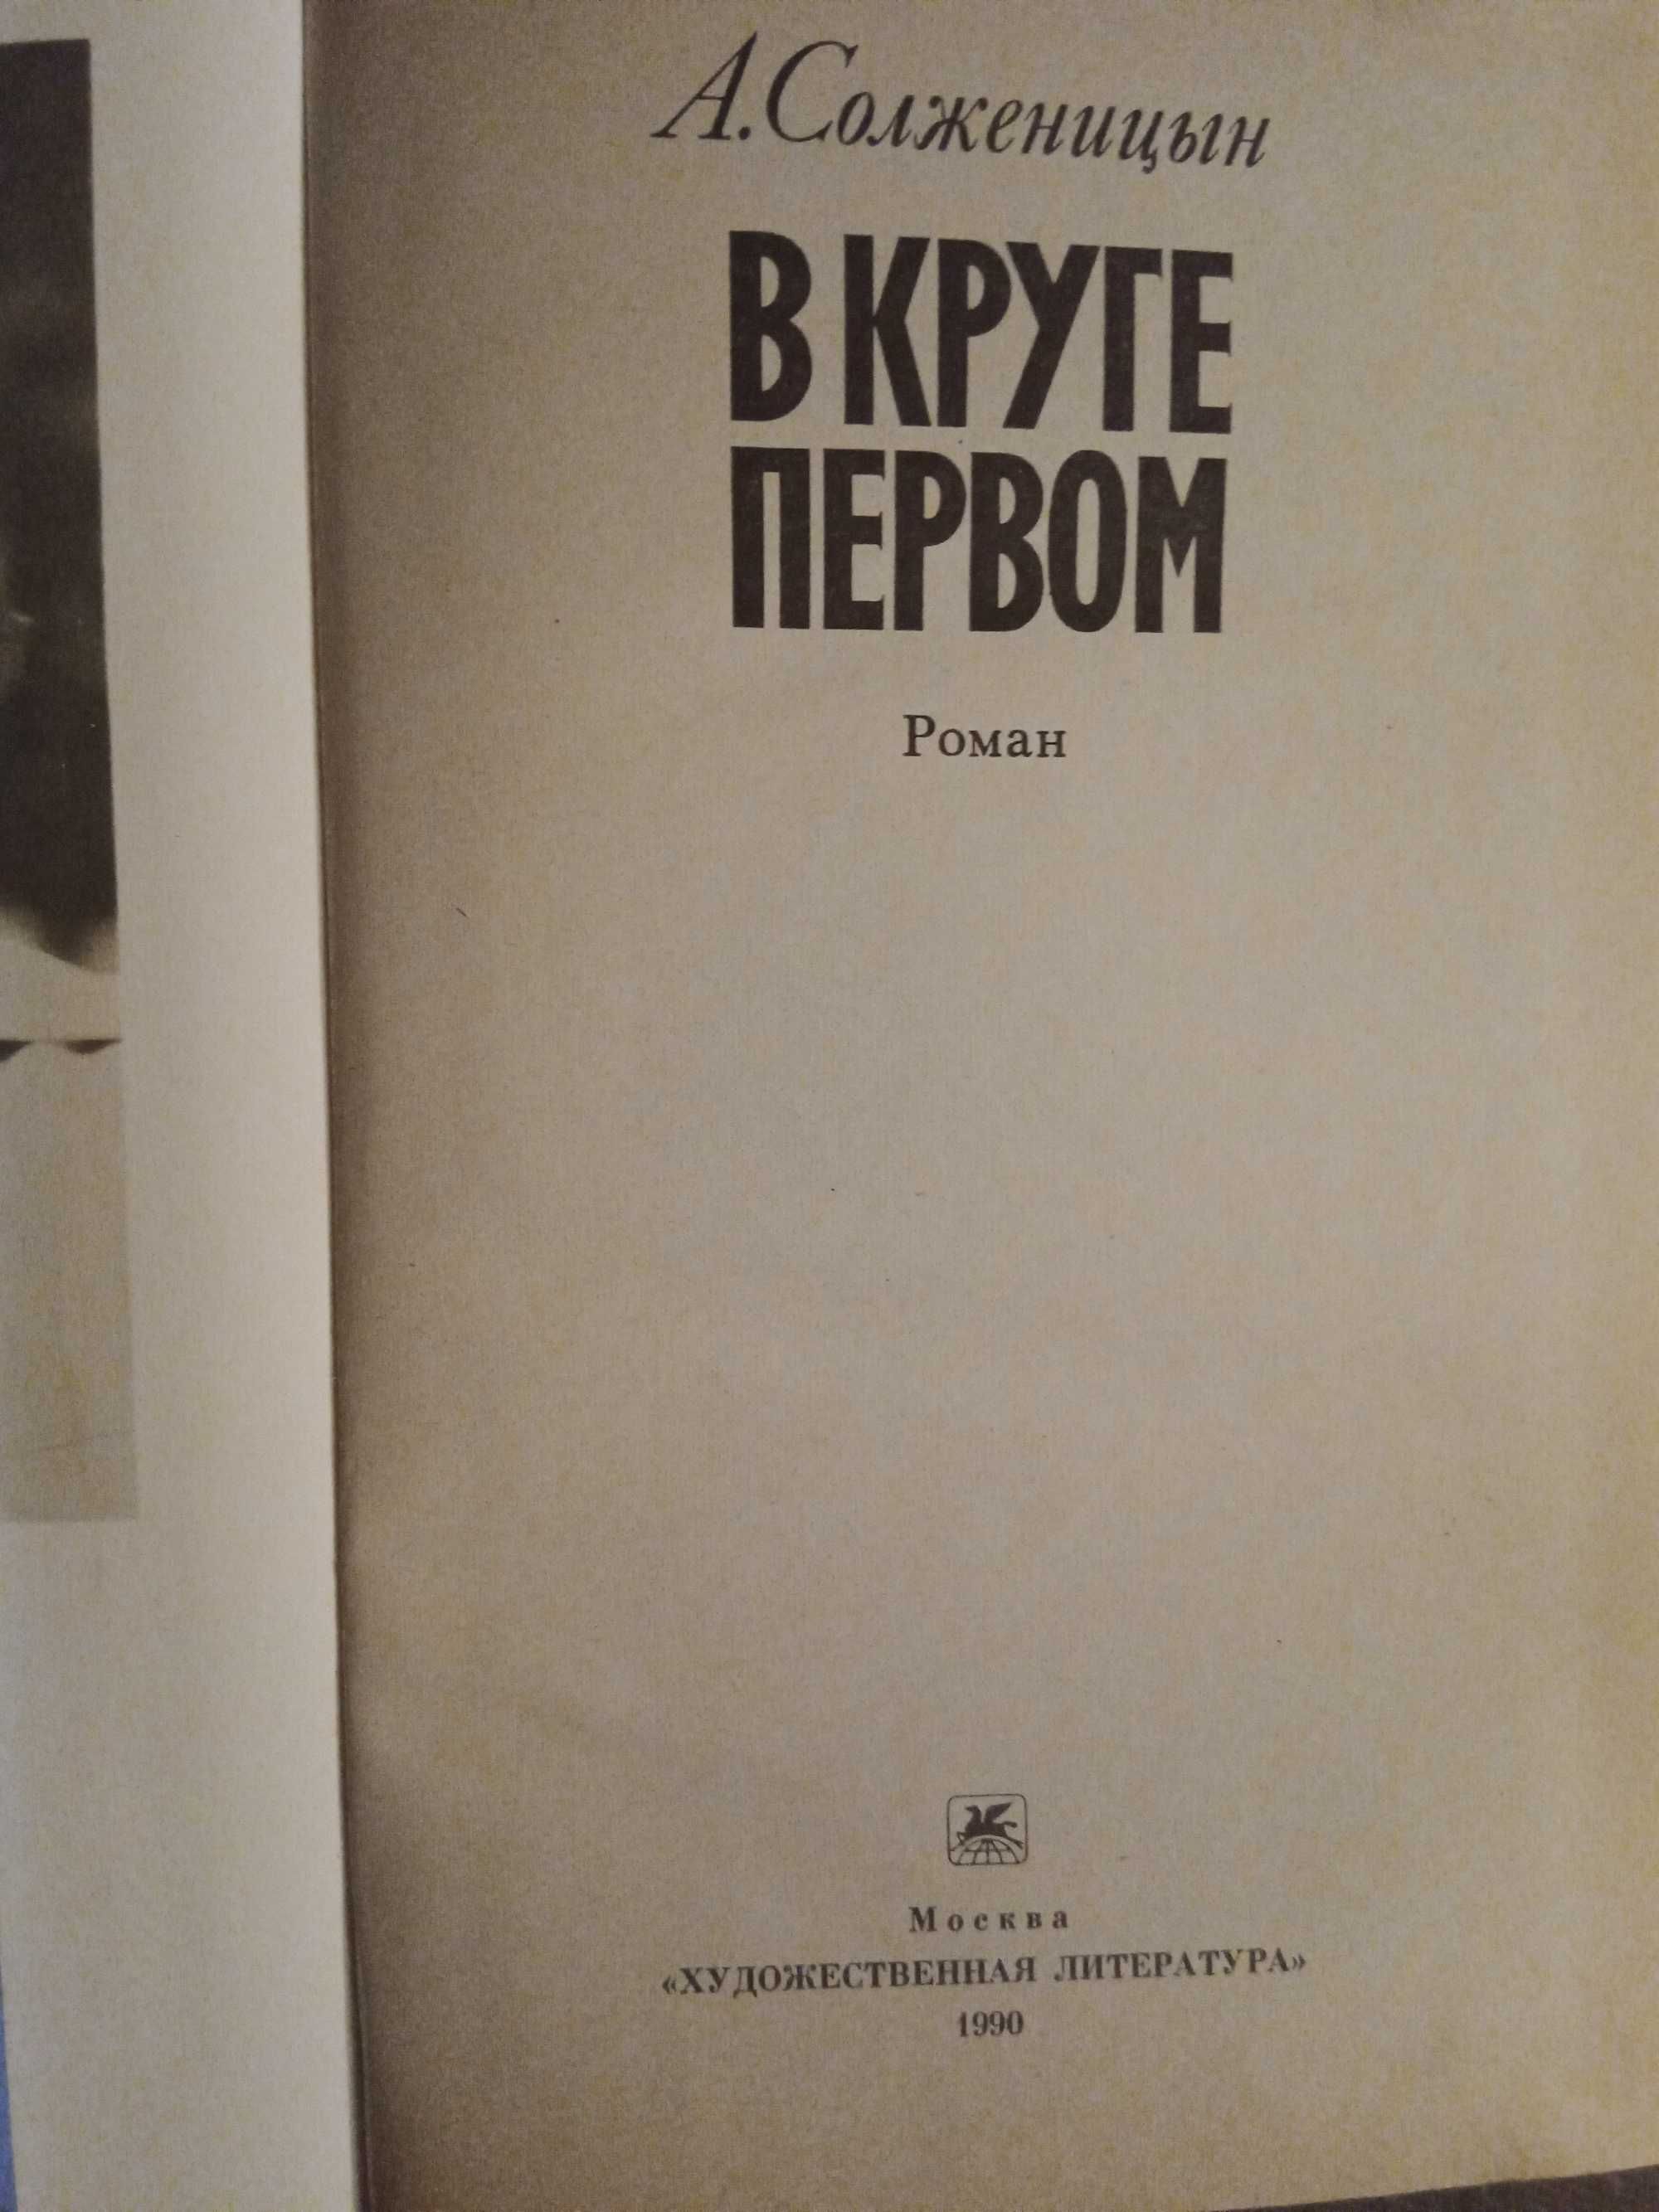 Книга автор А.Солженицын "В круге первом" 1990г